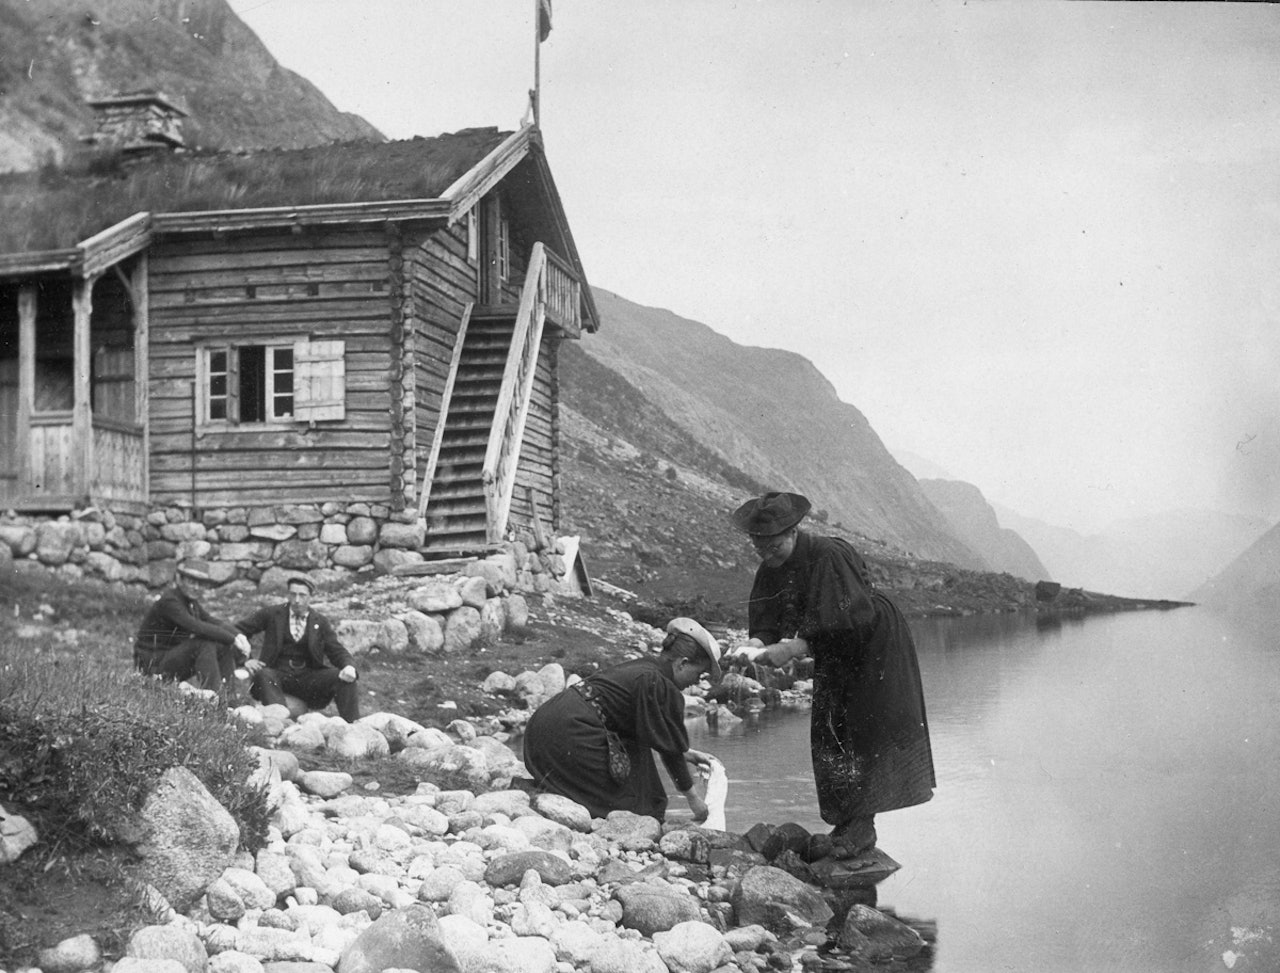 Kristine Bonnevie og Alette Falch (Schreiner) vasker klær ved Gjendebu sommeren 1896. De har vært på fottur sammen med Vilhelm Bjerknes (sittende til venstre) og Alfred Bryn (fotograf). Tilhører MUV, Universitetet i Oslo. 